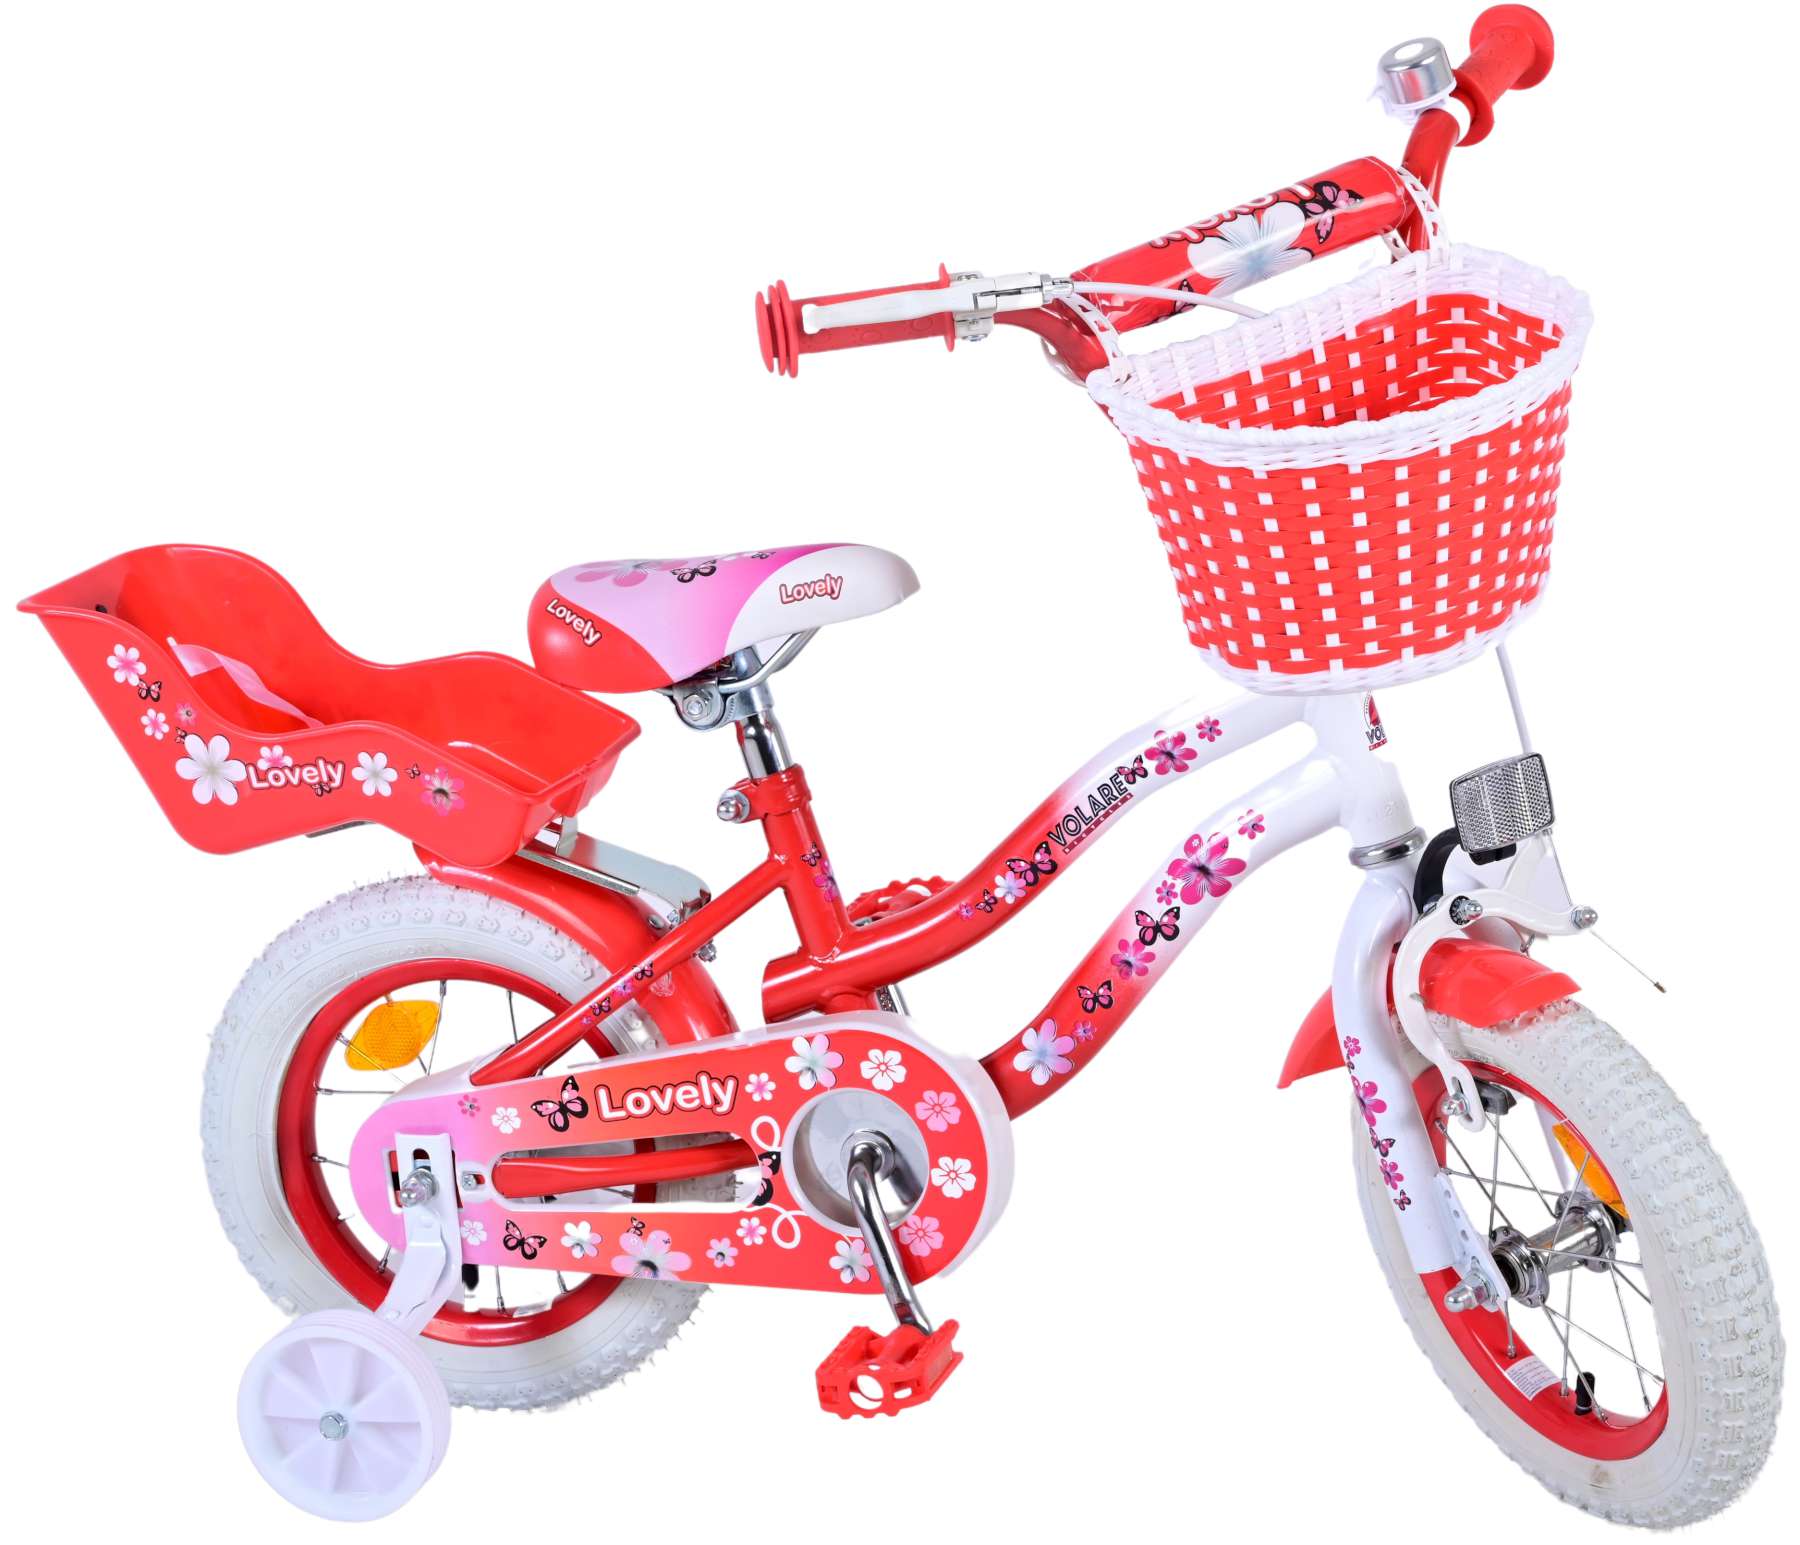 Vélo Lovely Rose - 12 Pouces ( 2 ans / 4 ans ) vélo pour enfant fille -  Veloenfant